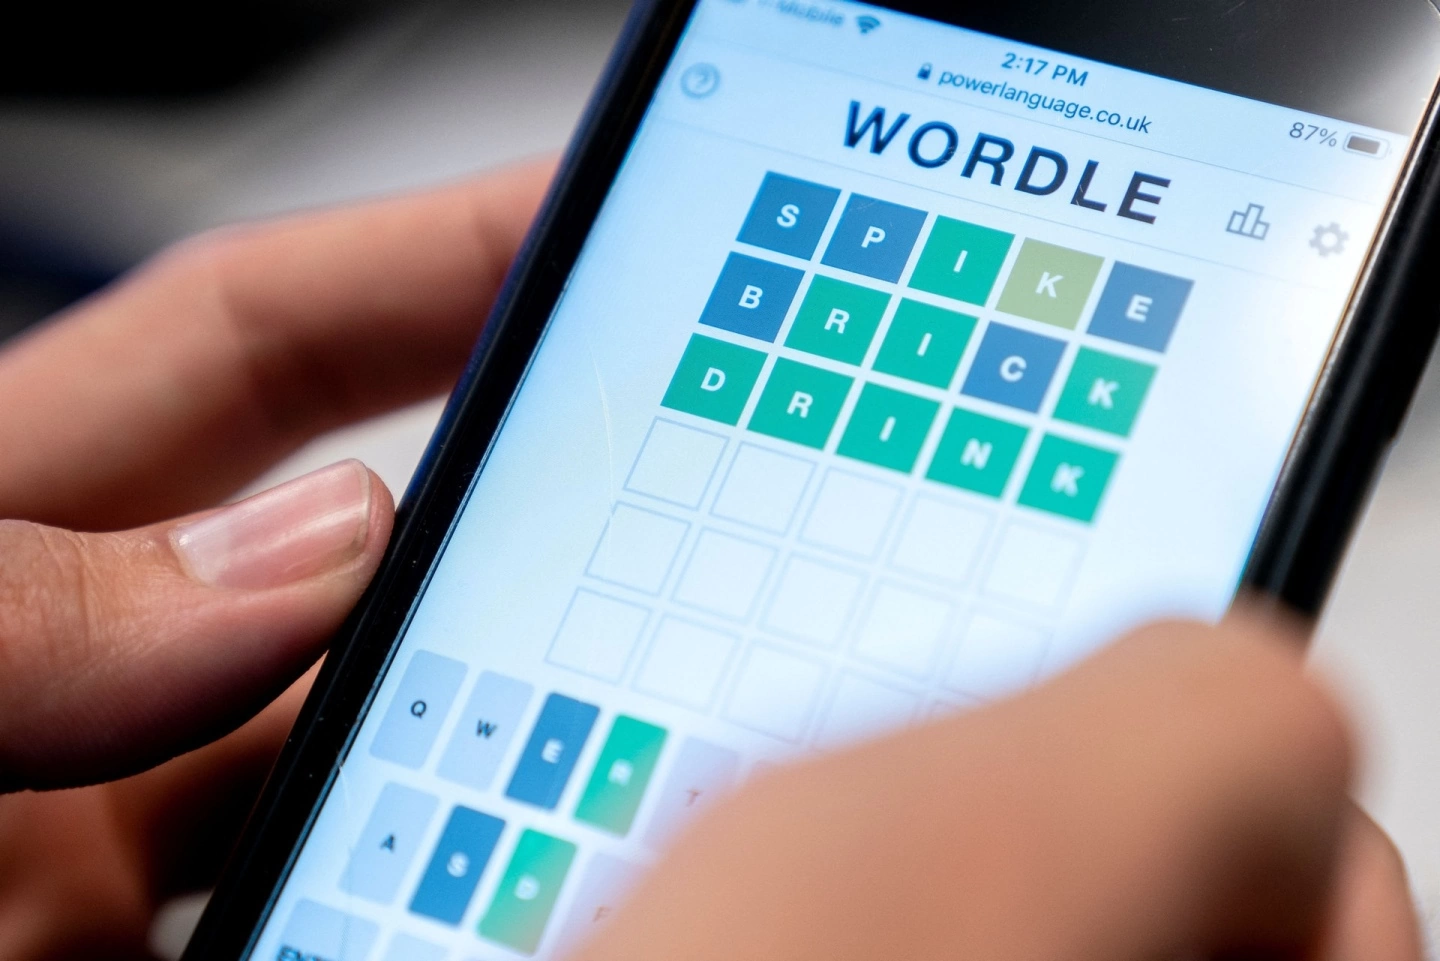 受爆红猜字游戏《Wordle》启发《Dungleon》加入独特规则与像素风格，让玩家每日地下城冒险 